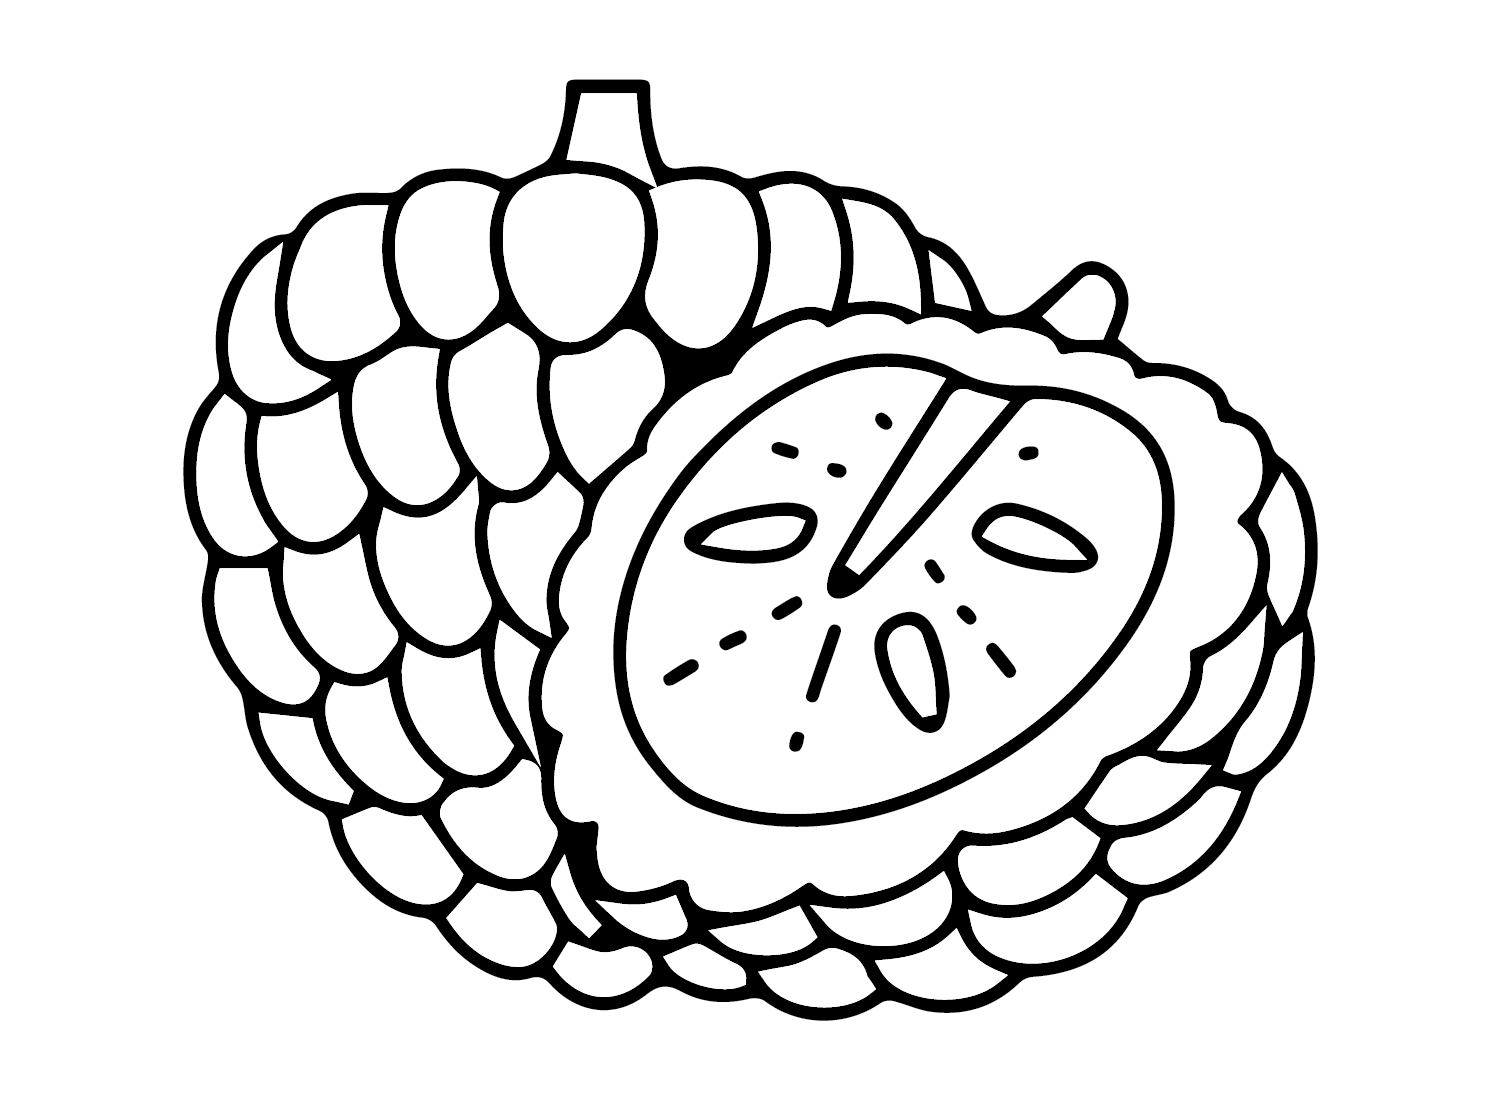 Pinha de frutas from Pinha de maçã